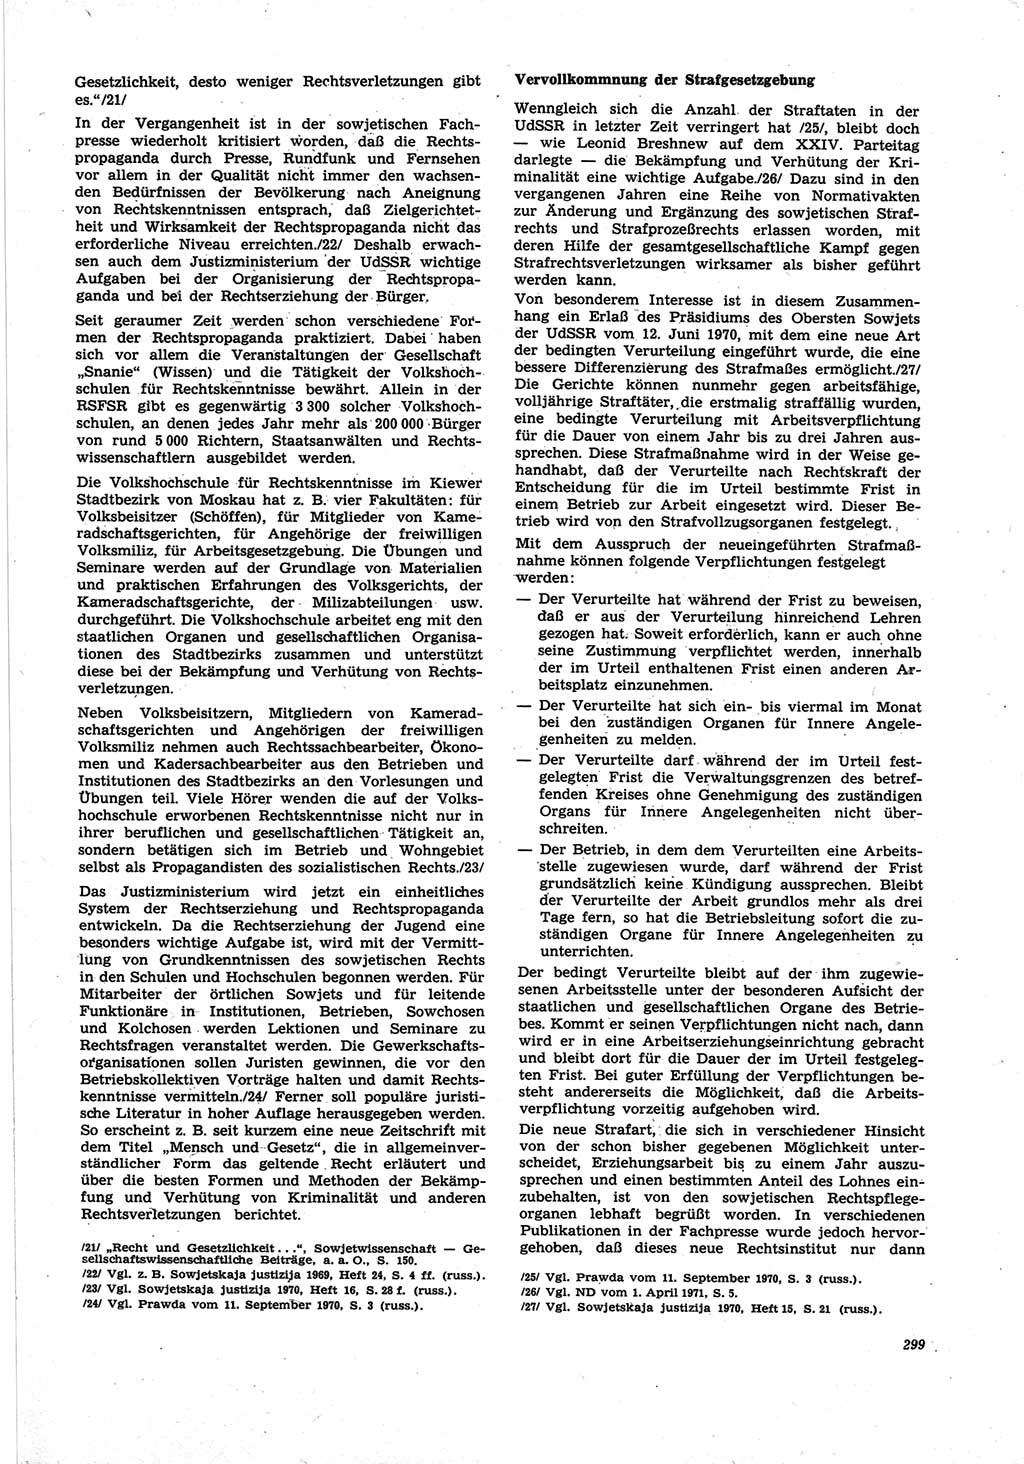 Neue Justiz (NJ), Zeitschrift für Recht und Rechtswissenschaft [Deutsche Demokratische Republik (DDR)], 25. Jahrgang 1971, Seite 299 (NJ DDR 1971, S. 299)